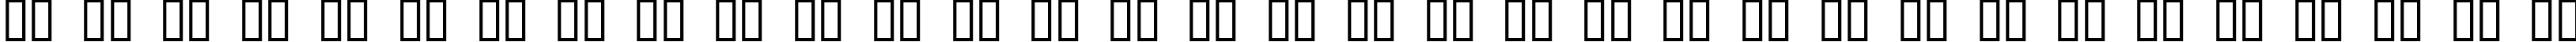 Пример написания русского алфавита шрифтом Facelift